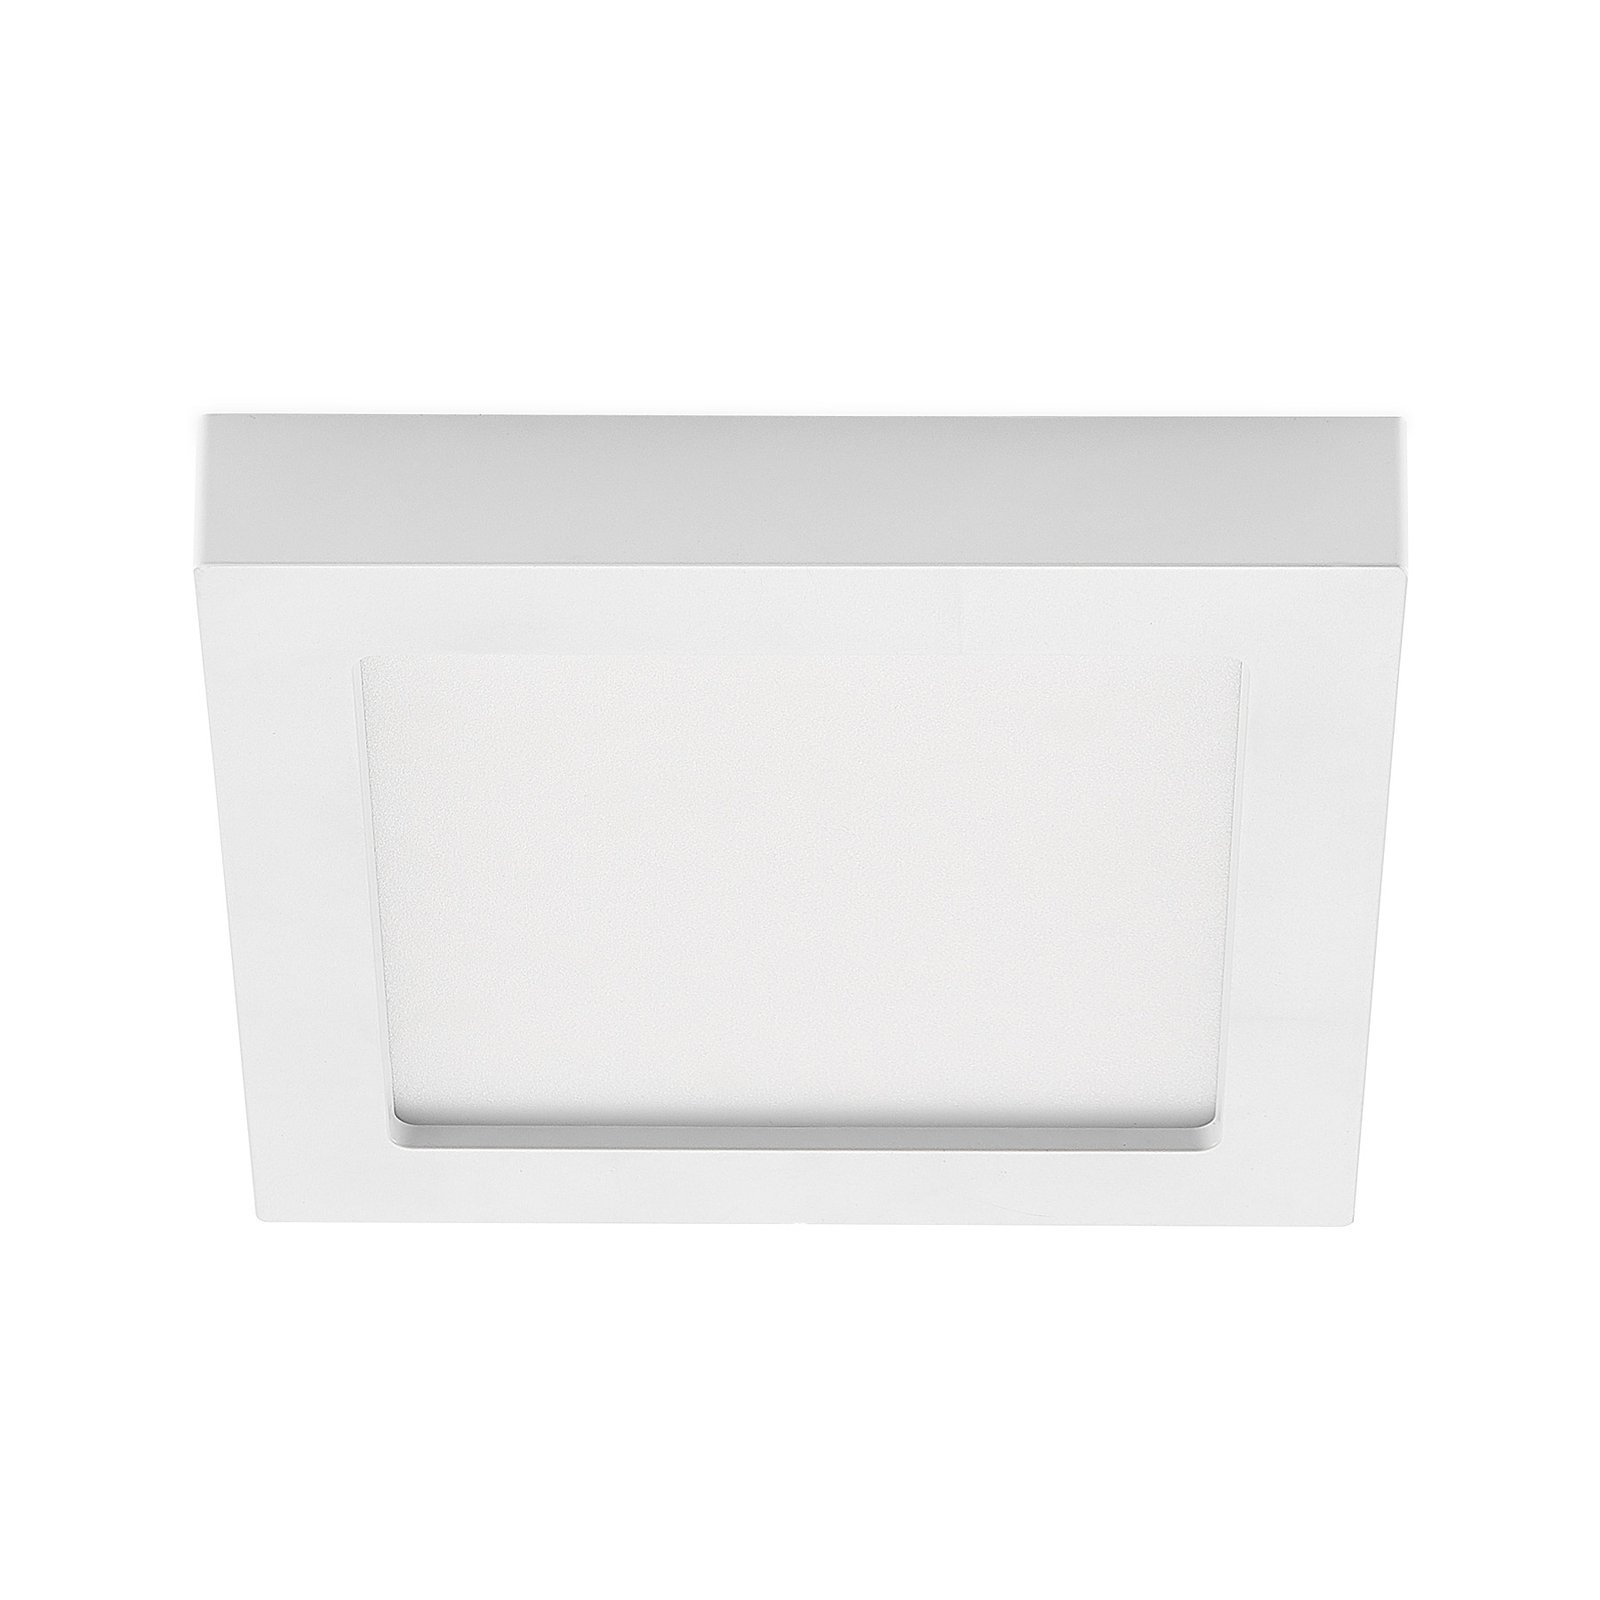 Prios Alette LED-Deckenleuchte, weiß, 22,7 cm 24W